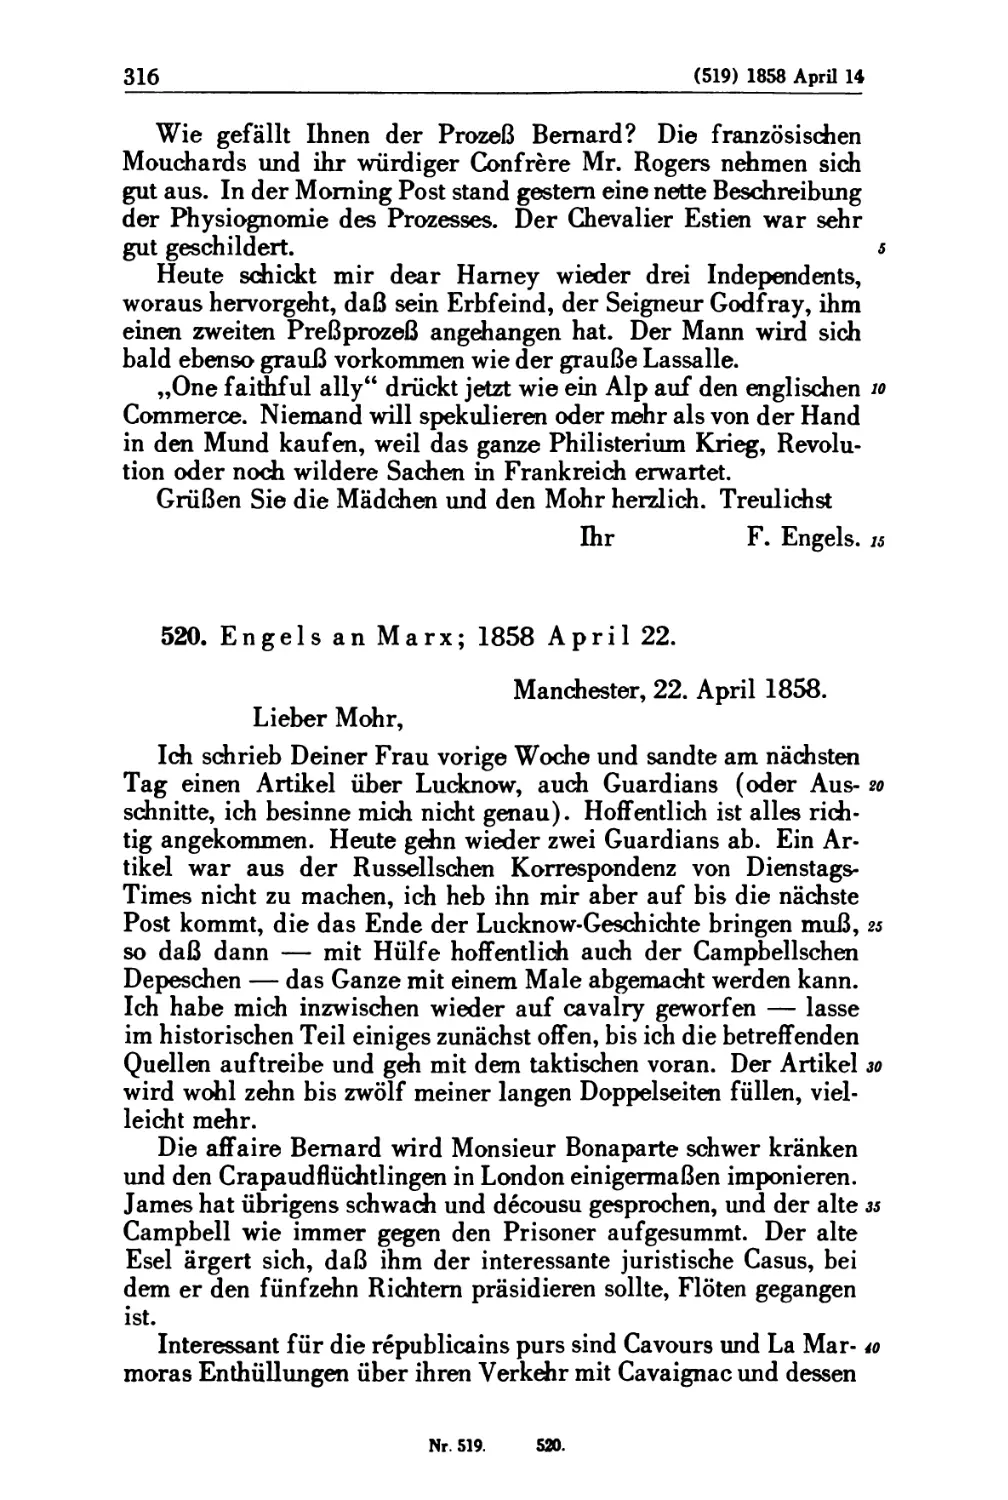 520. Engels an Marx; 1858 April 22